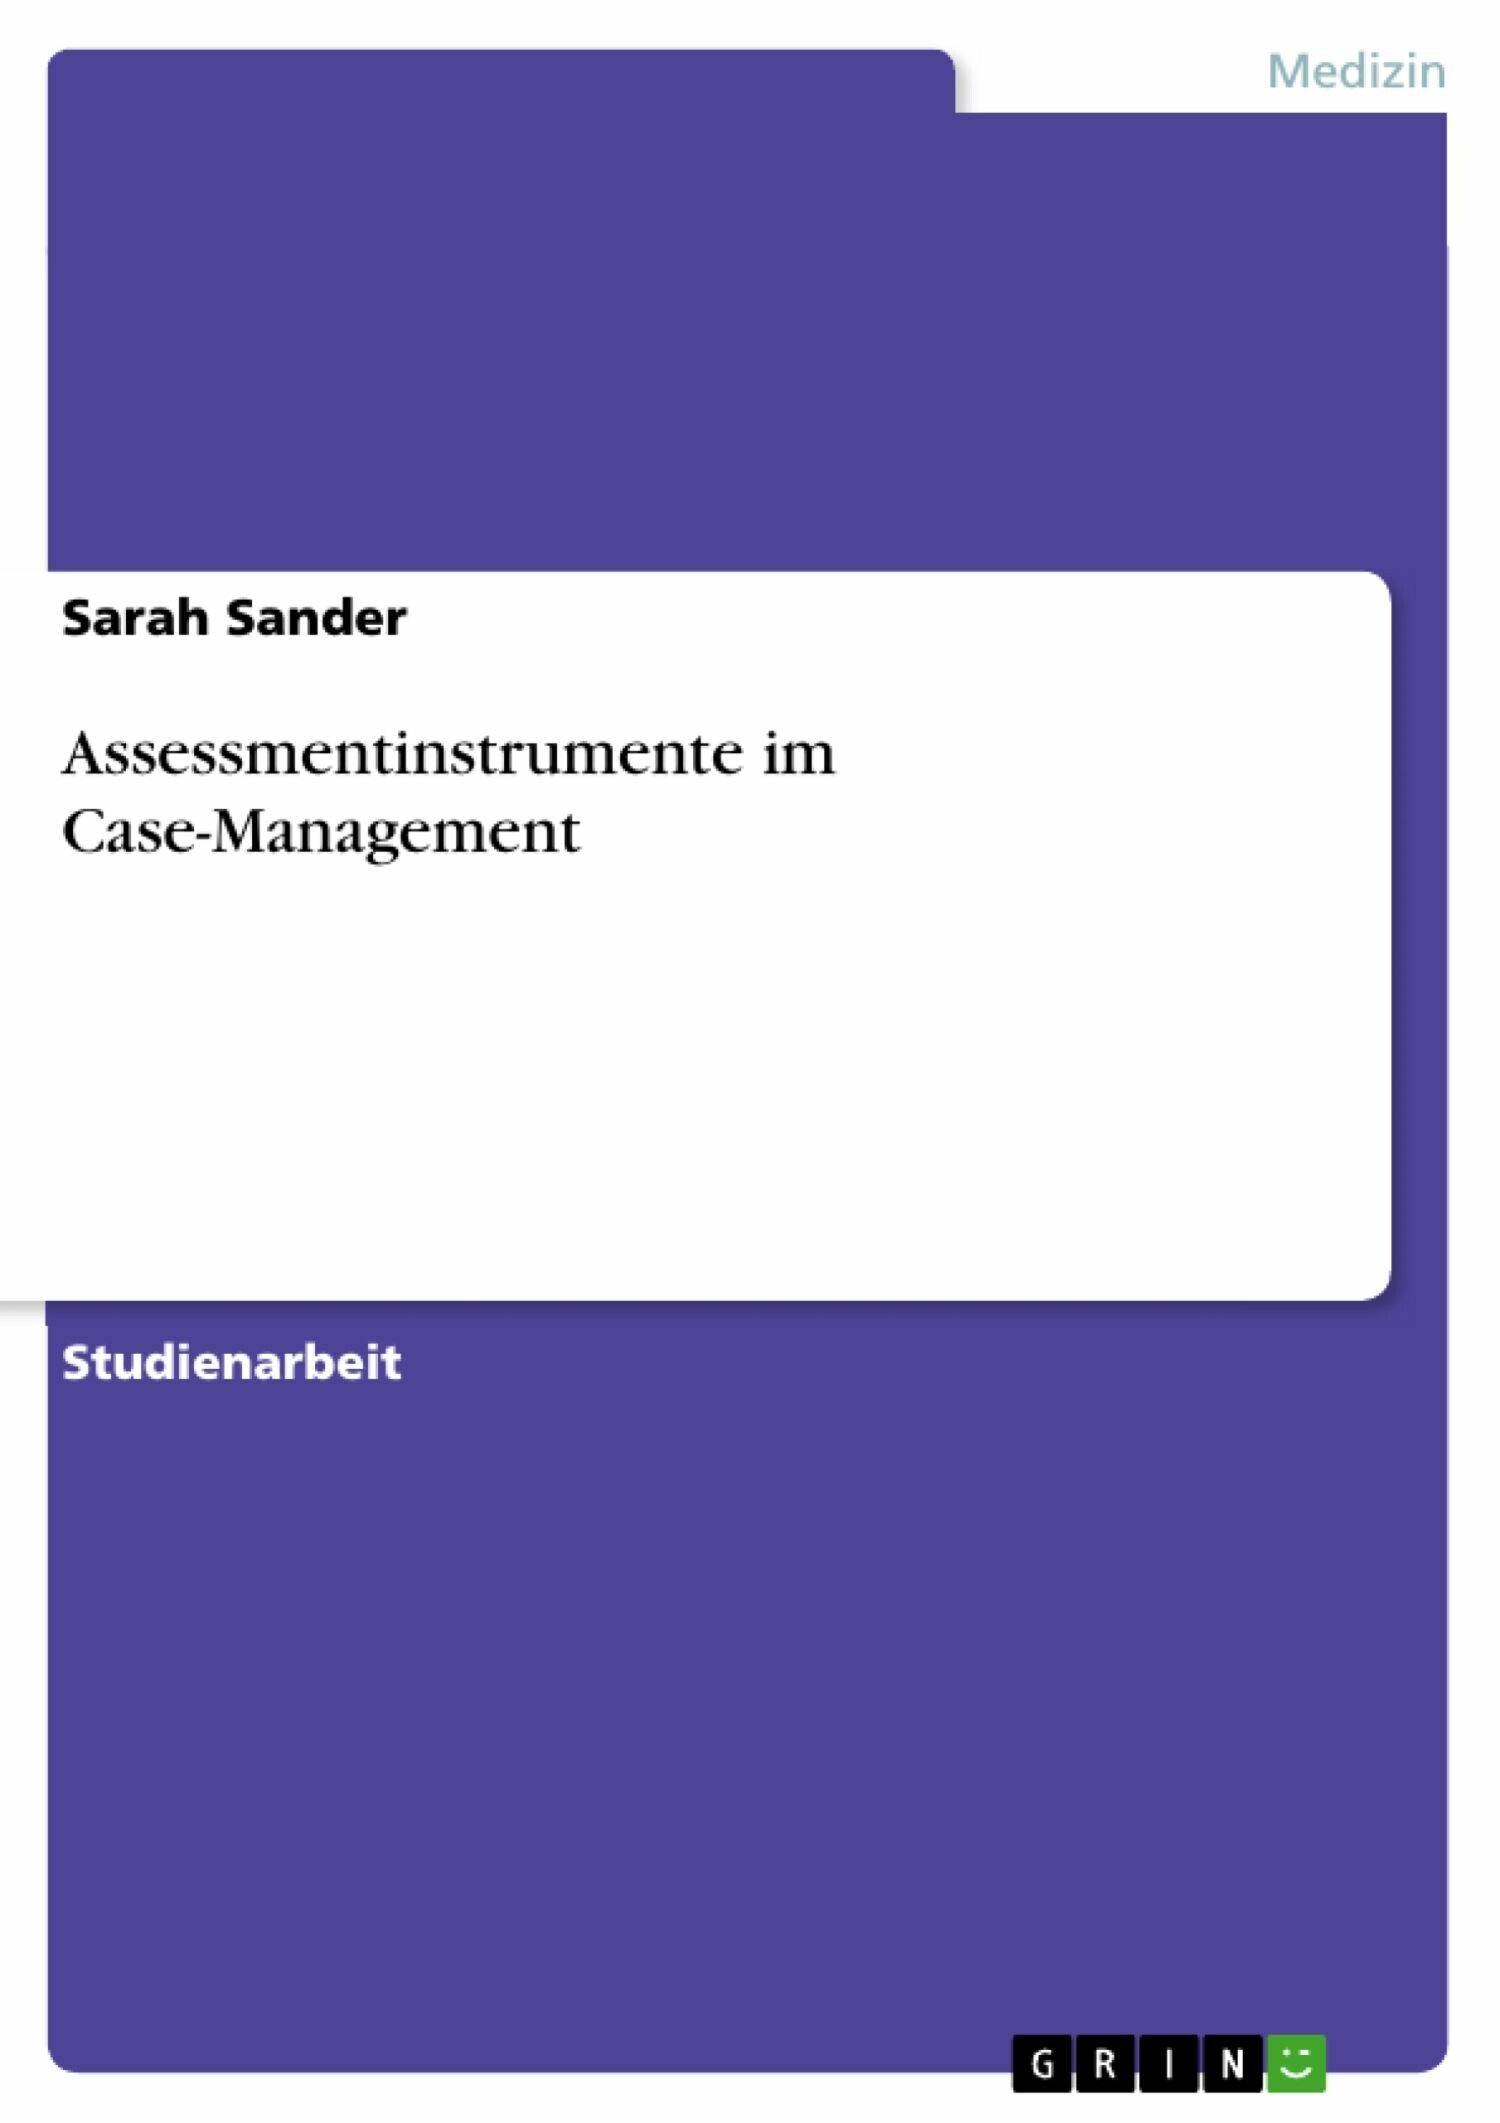 Assessmentinstrumente im Case-Management